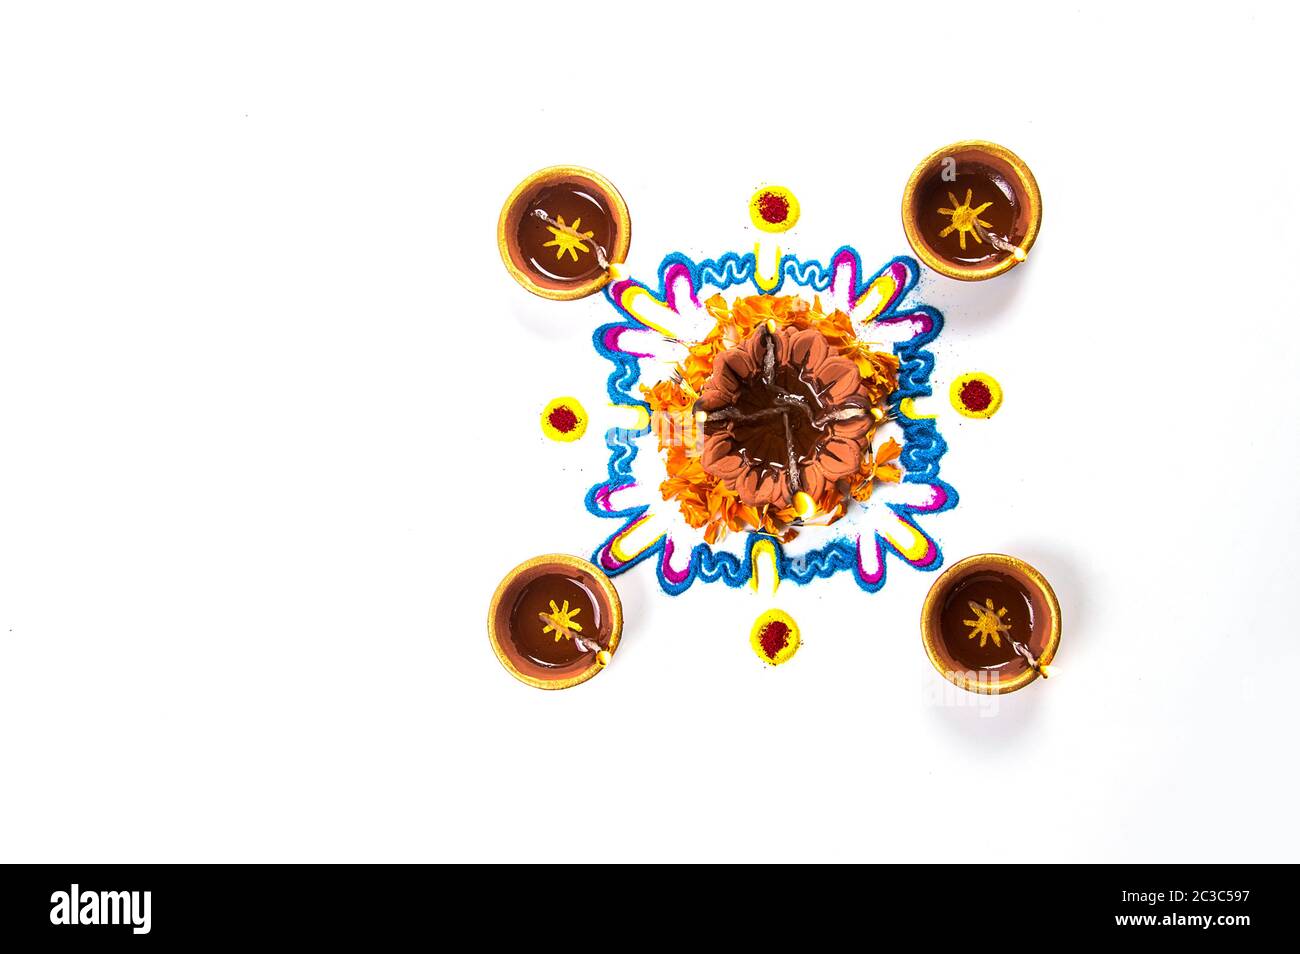 Ton diya Lampe leuchten bei Diwali Festival. Ton Diya auf RANGOLI. Happy Diwali Greetings Card Design, Indische hinduistische Lichterfest Diwali genannt. Stockfoto